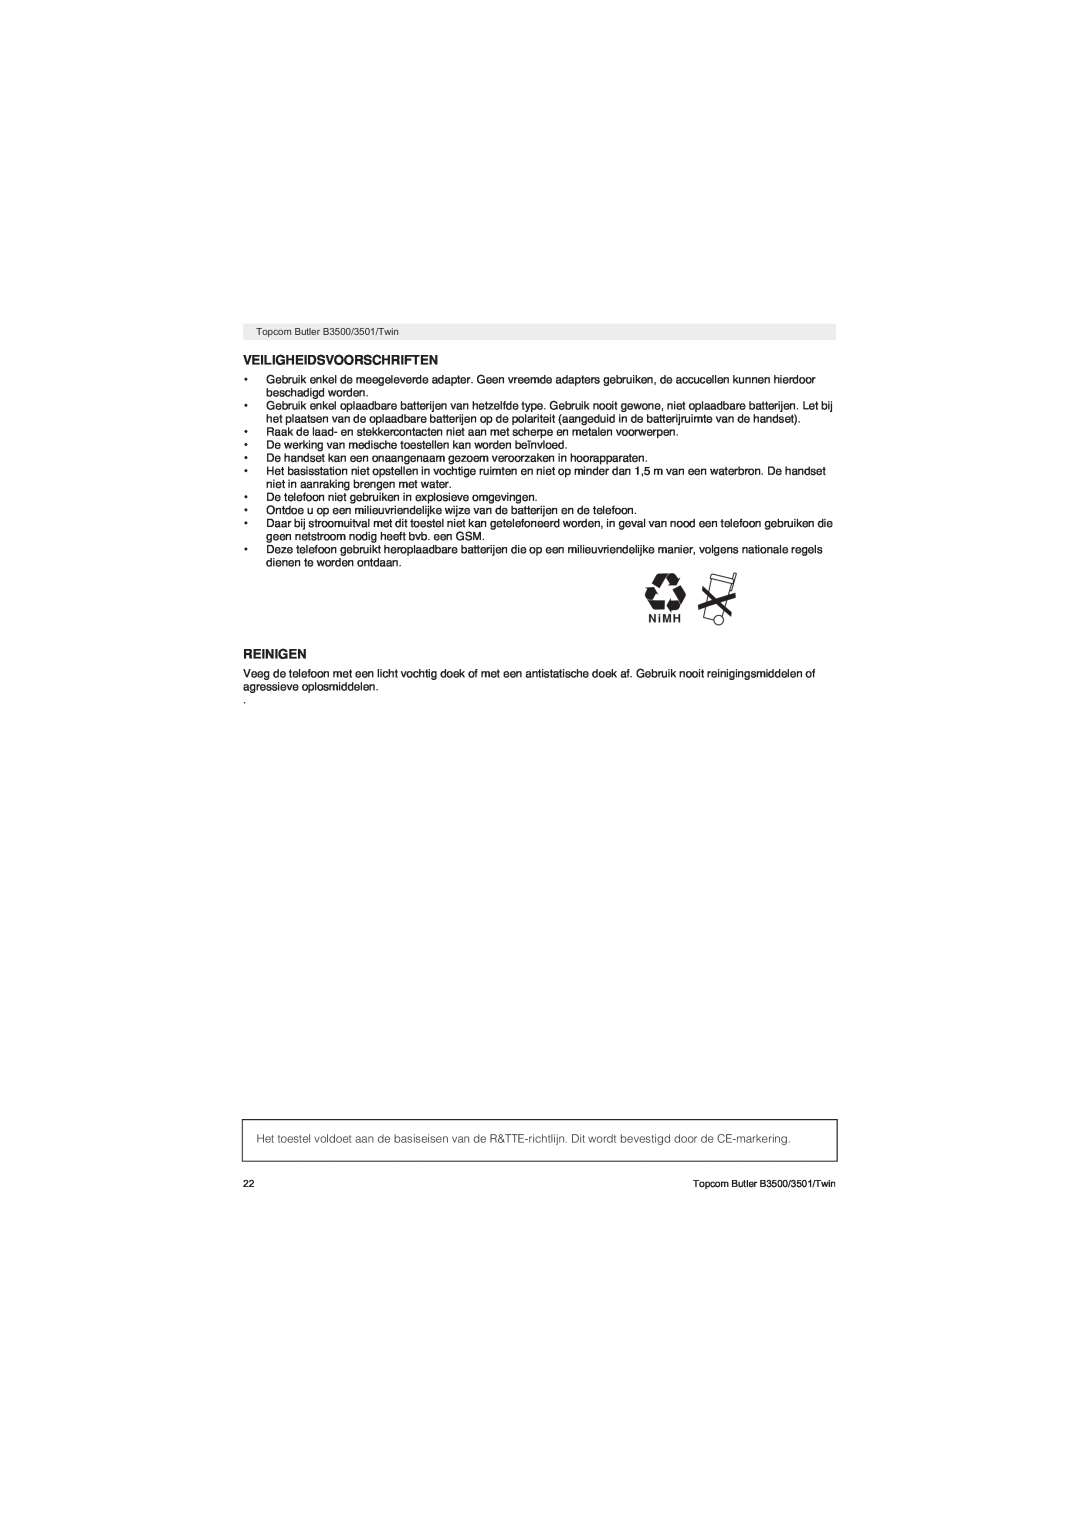 Topcom BUTLER 3500 manual Veiligheidsvoorschriften, Reinigen, N i M H 